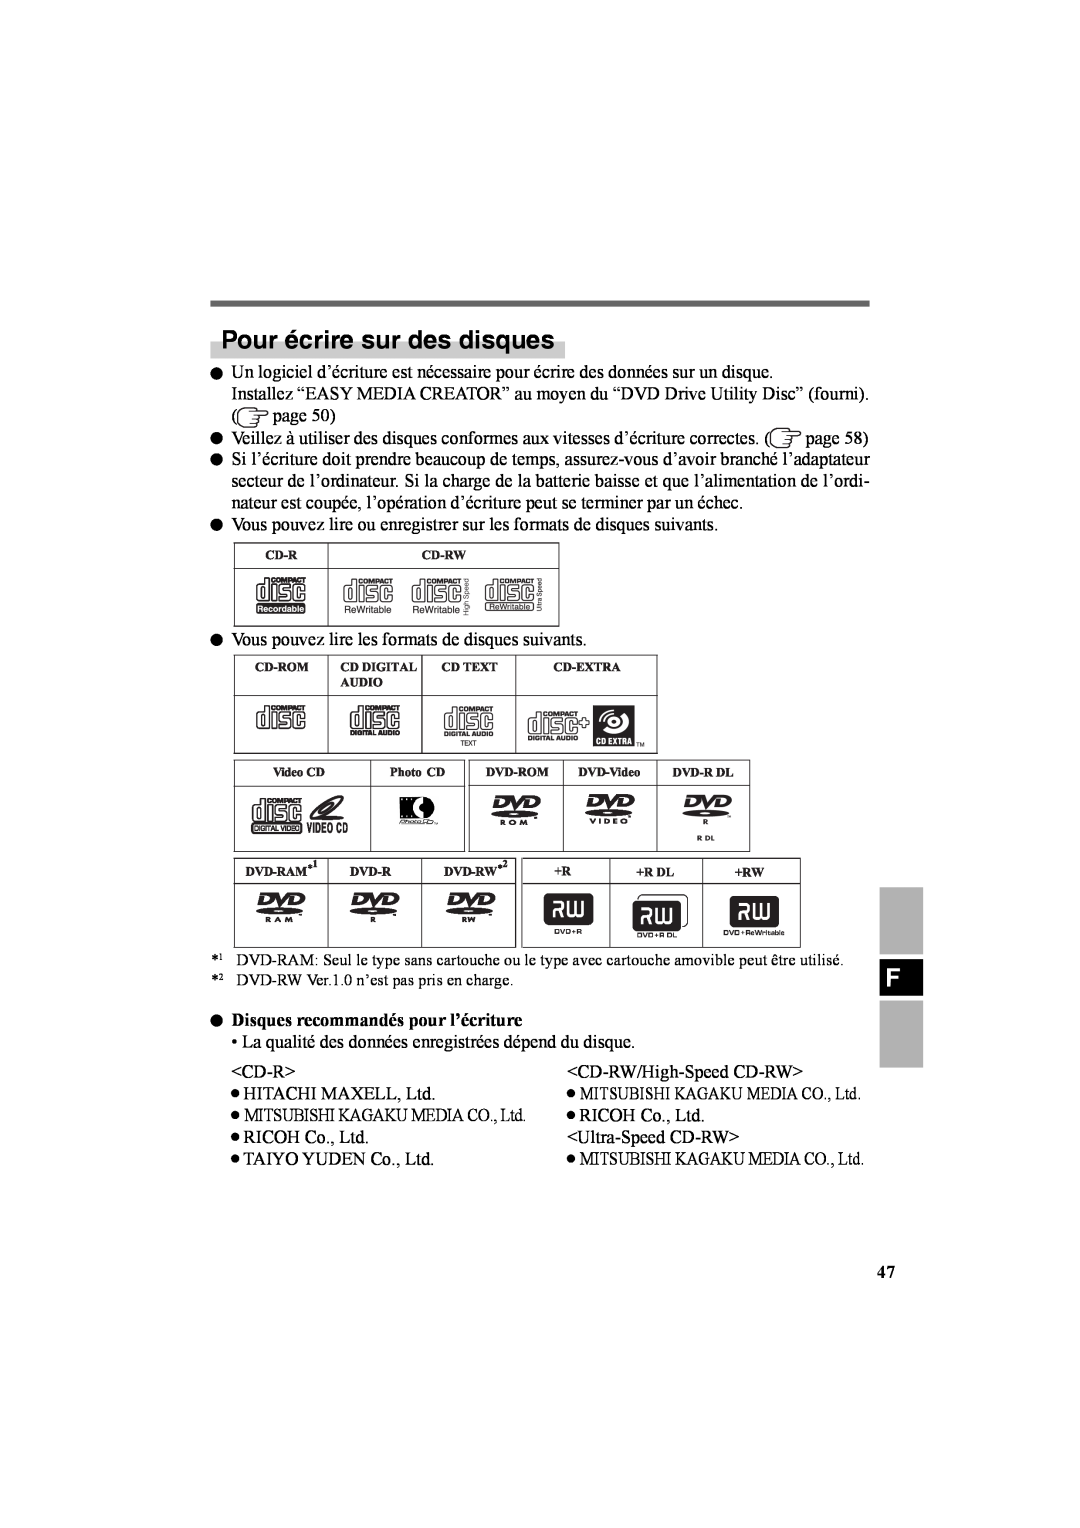 Panasonic CF-VDR301U specifications Pour écrire sur des disques, Disques recommandés pour l’écriture 